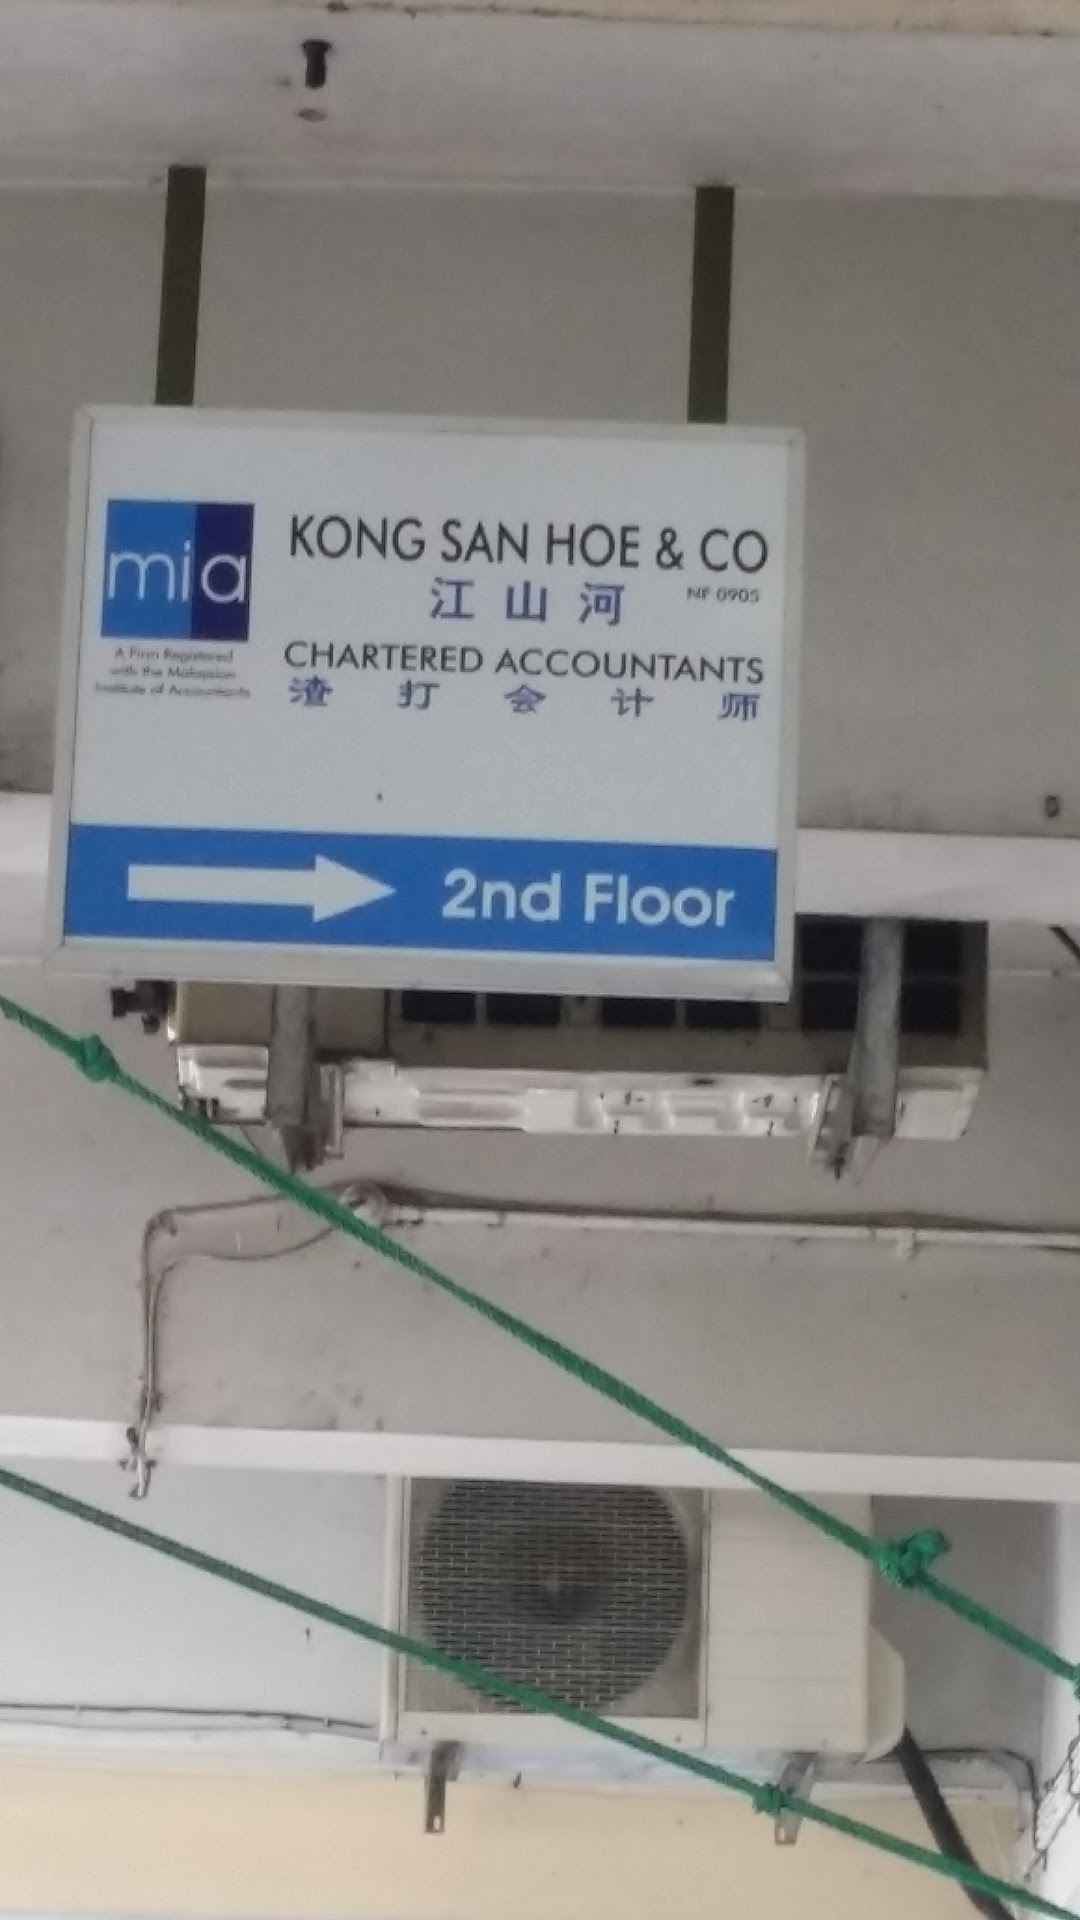 Kong San Hoe & Company